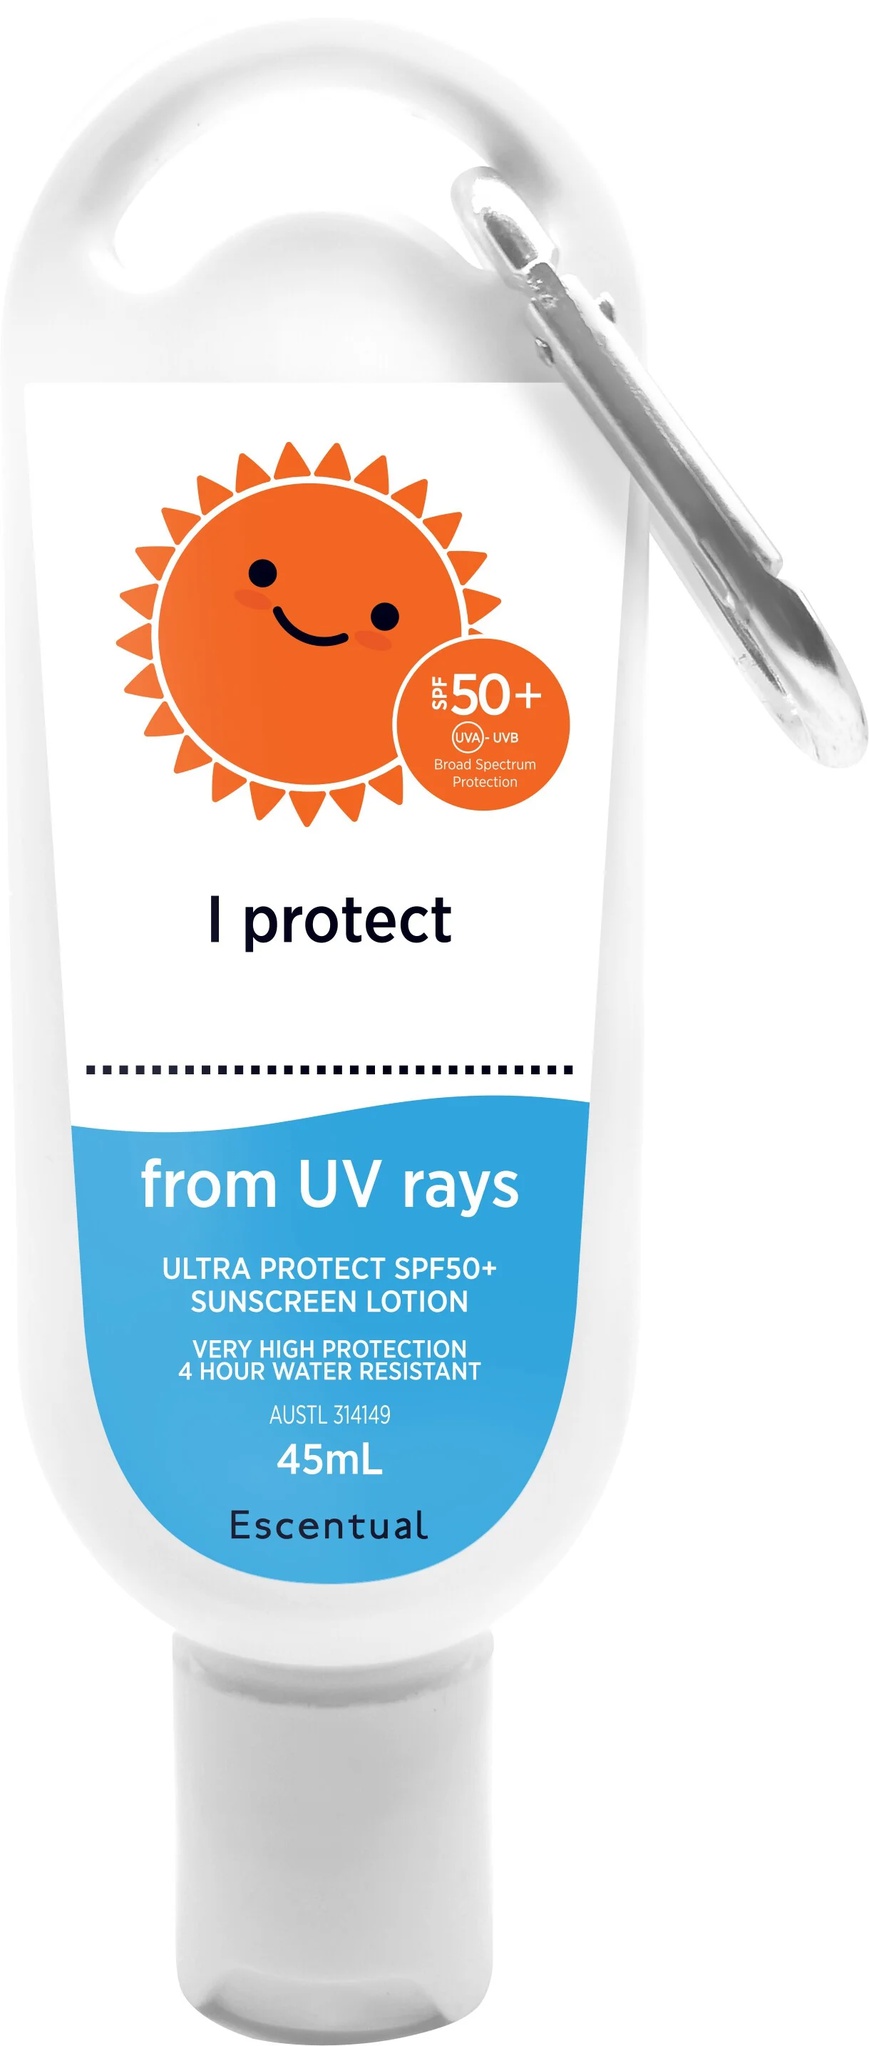 Escentual Sunscreen SPF50+